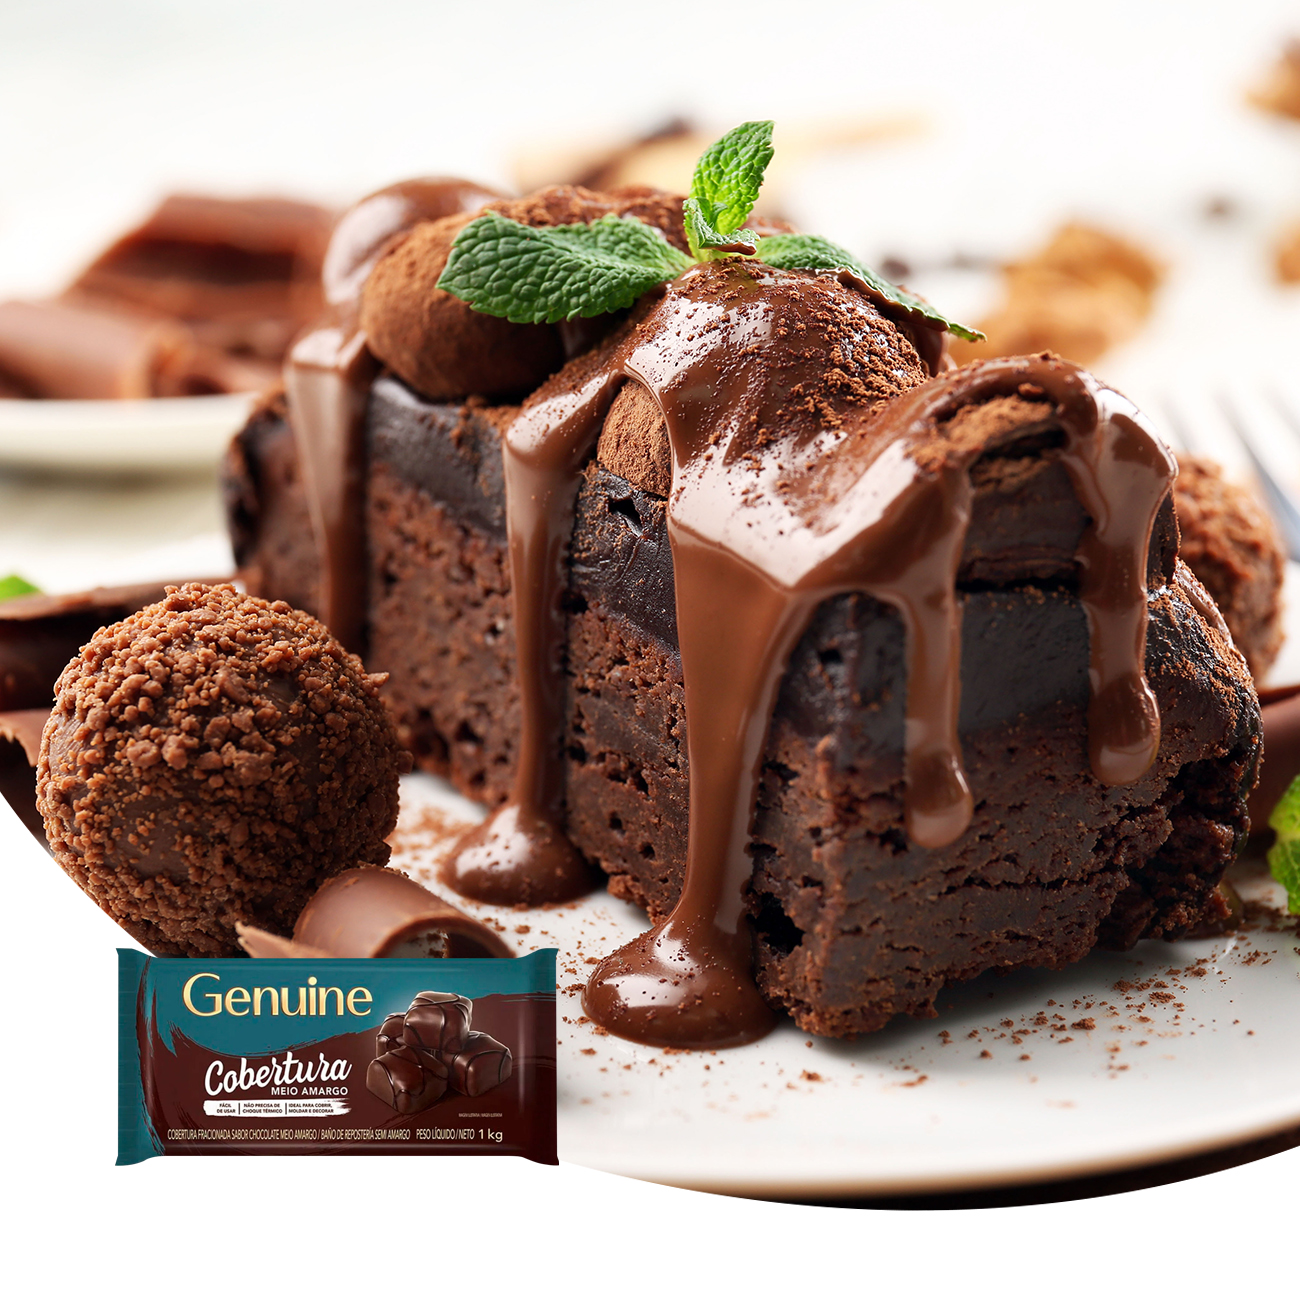 Cobertura de Chocolate em Barra Cargill Genuine Fracionada Meio Amargo 1kg | Caixa com 10 Unidades